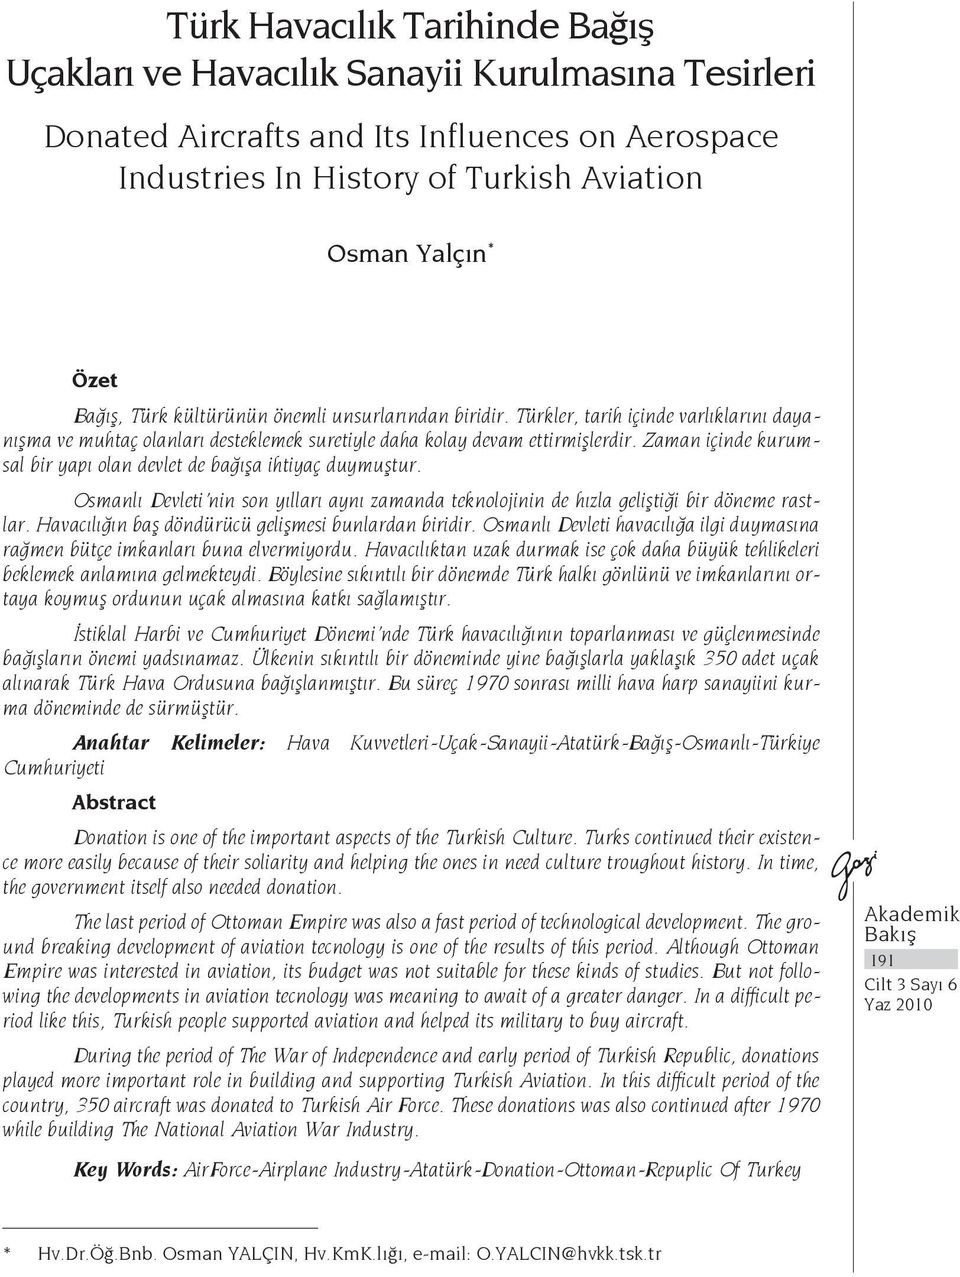 Zaman içinde kurumsal bir yapı olan devlet de bağışa ihtiyaç duymuştur. Osmanlı Devleti nin son yılları aynı zamanda teknolojinin de hızla geliştiği bir döneme rastlar.